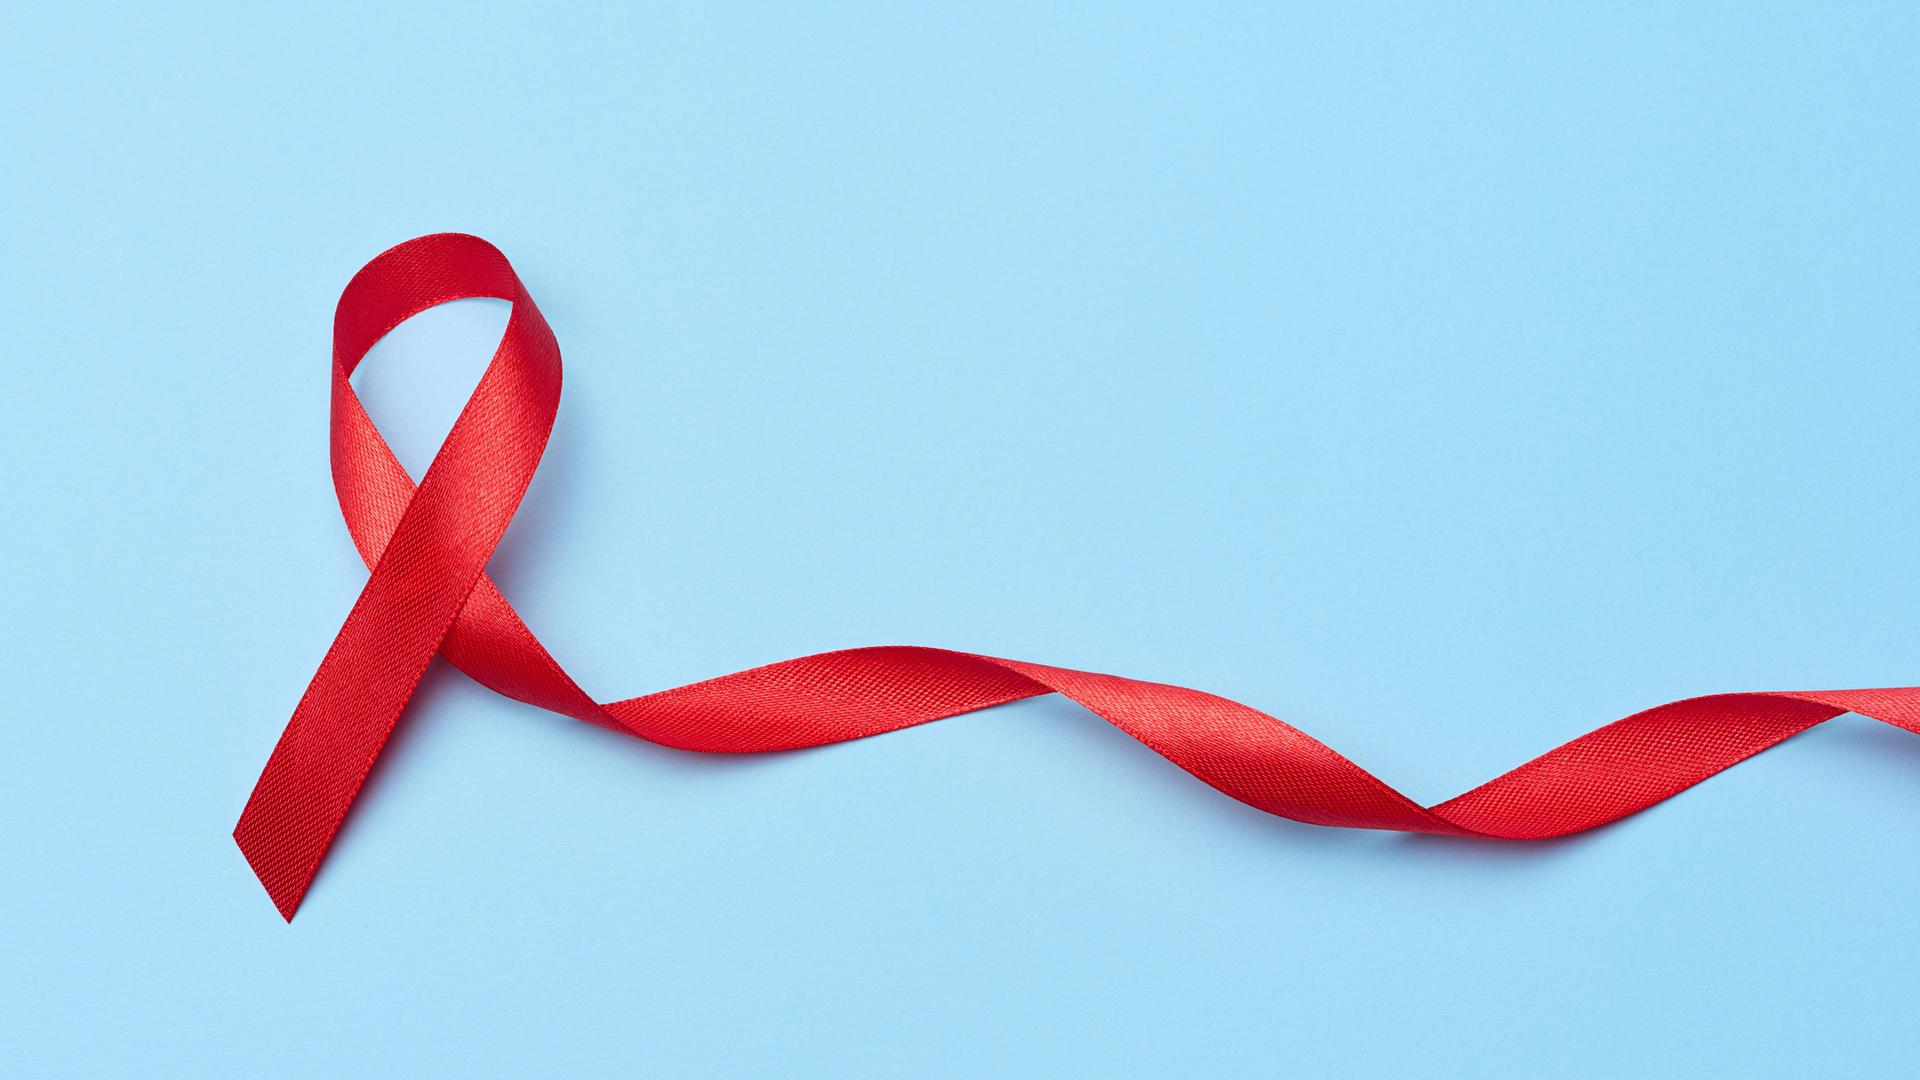 Eine rote Aids-Solidaritätsschleife, deren eines Ende länger ist und in der Spiralform einer DNA zur Seite fließt.